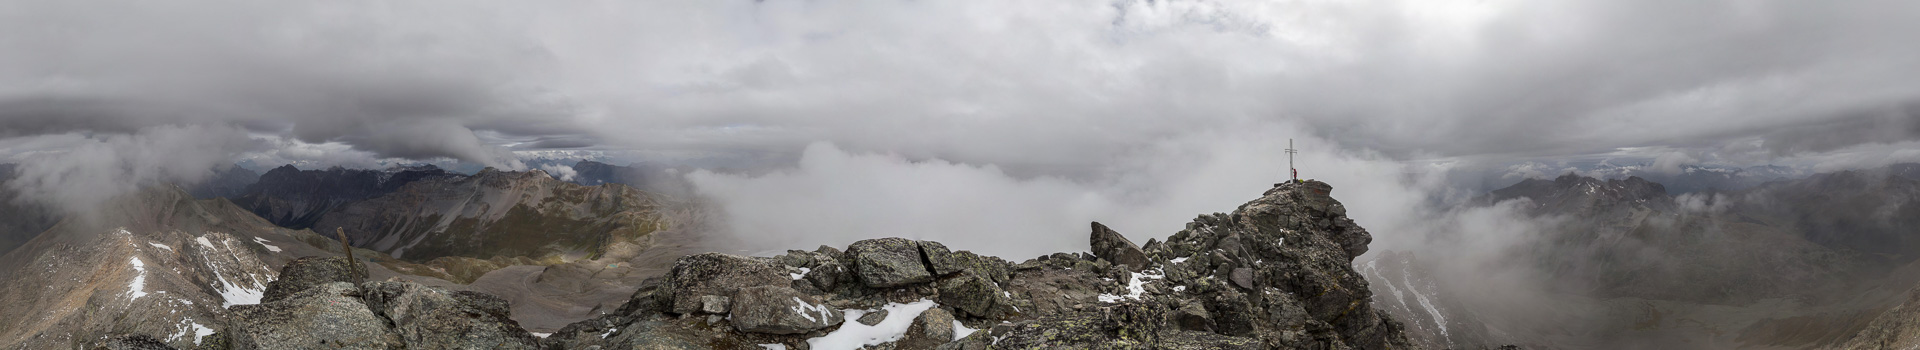 Gipfelpanorama mit Wolken und ohne viel Aussicht.